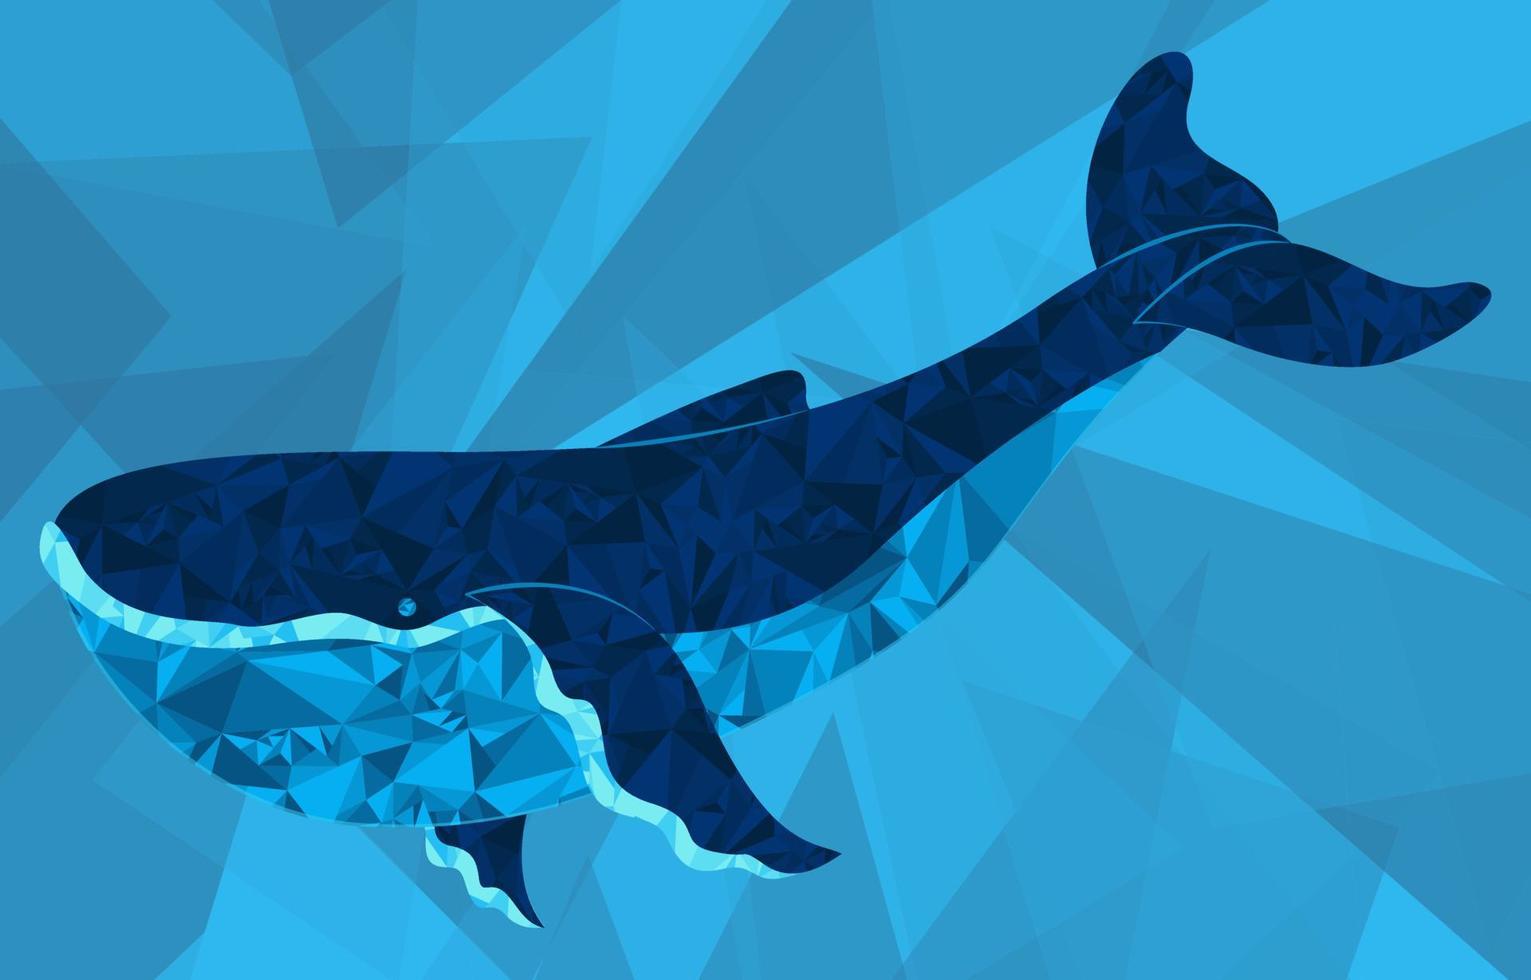 uma linda baleia azul feita de formas geométricas em um fundo geométrico. ilustração elegante de formas geométricas simples. ilustração vetorial vetor